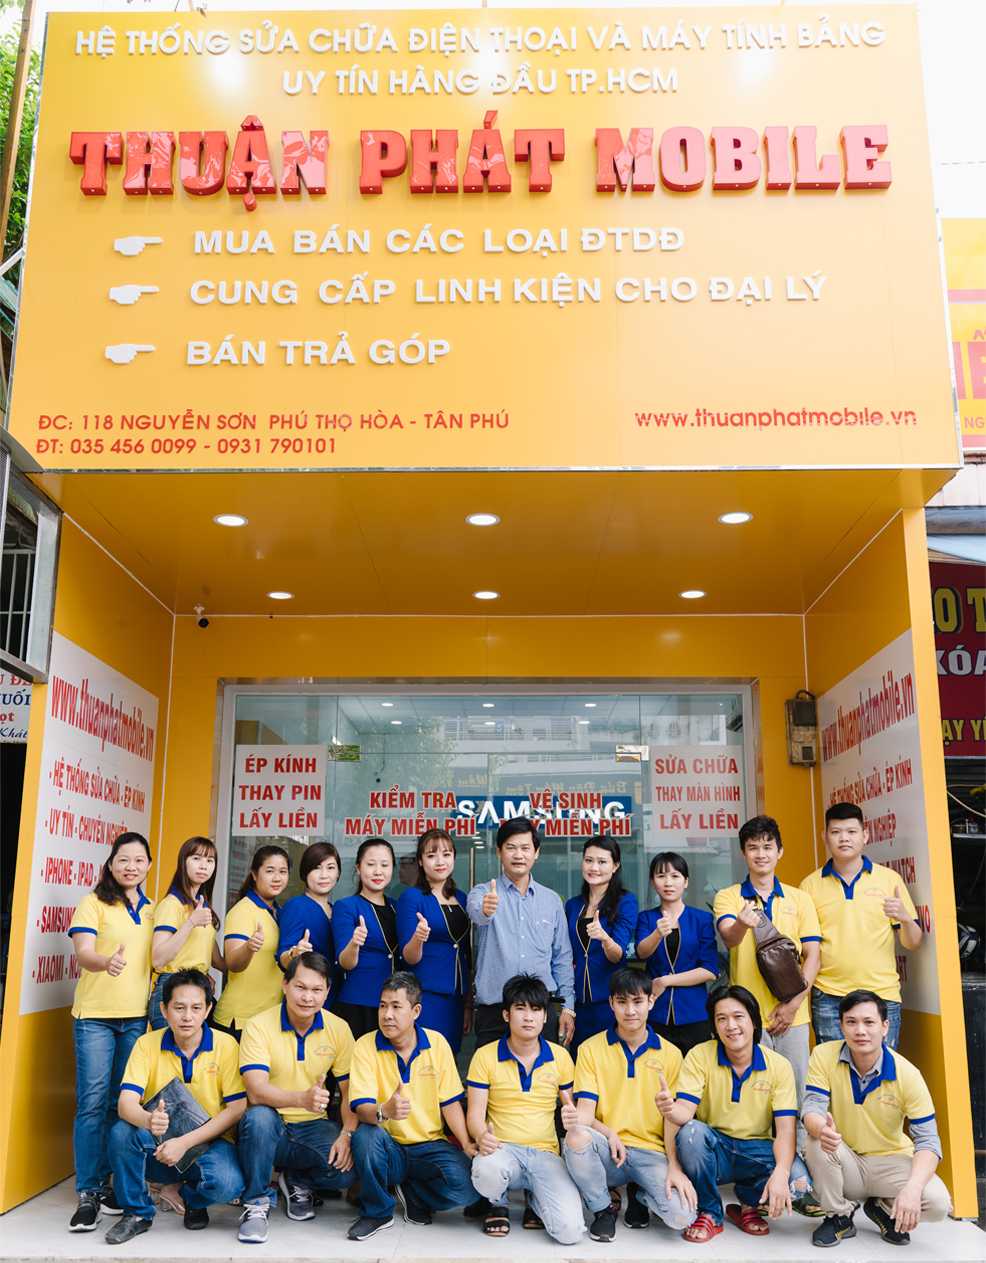 Trung tâm Thuận Phát Mobile chi nhánh 2 Lê Quang Định, Quận Bình Thạnh TPHCM